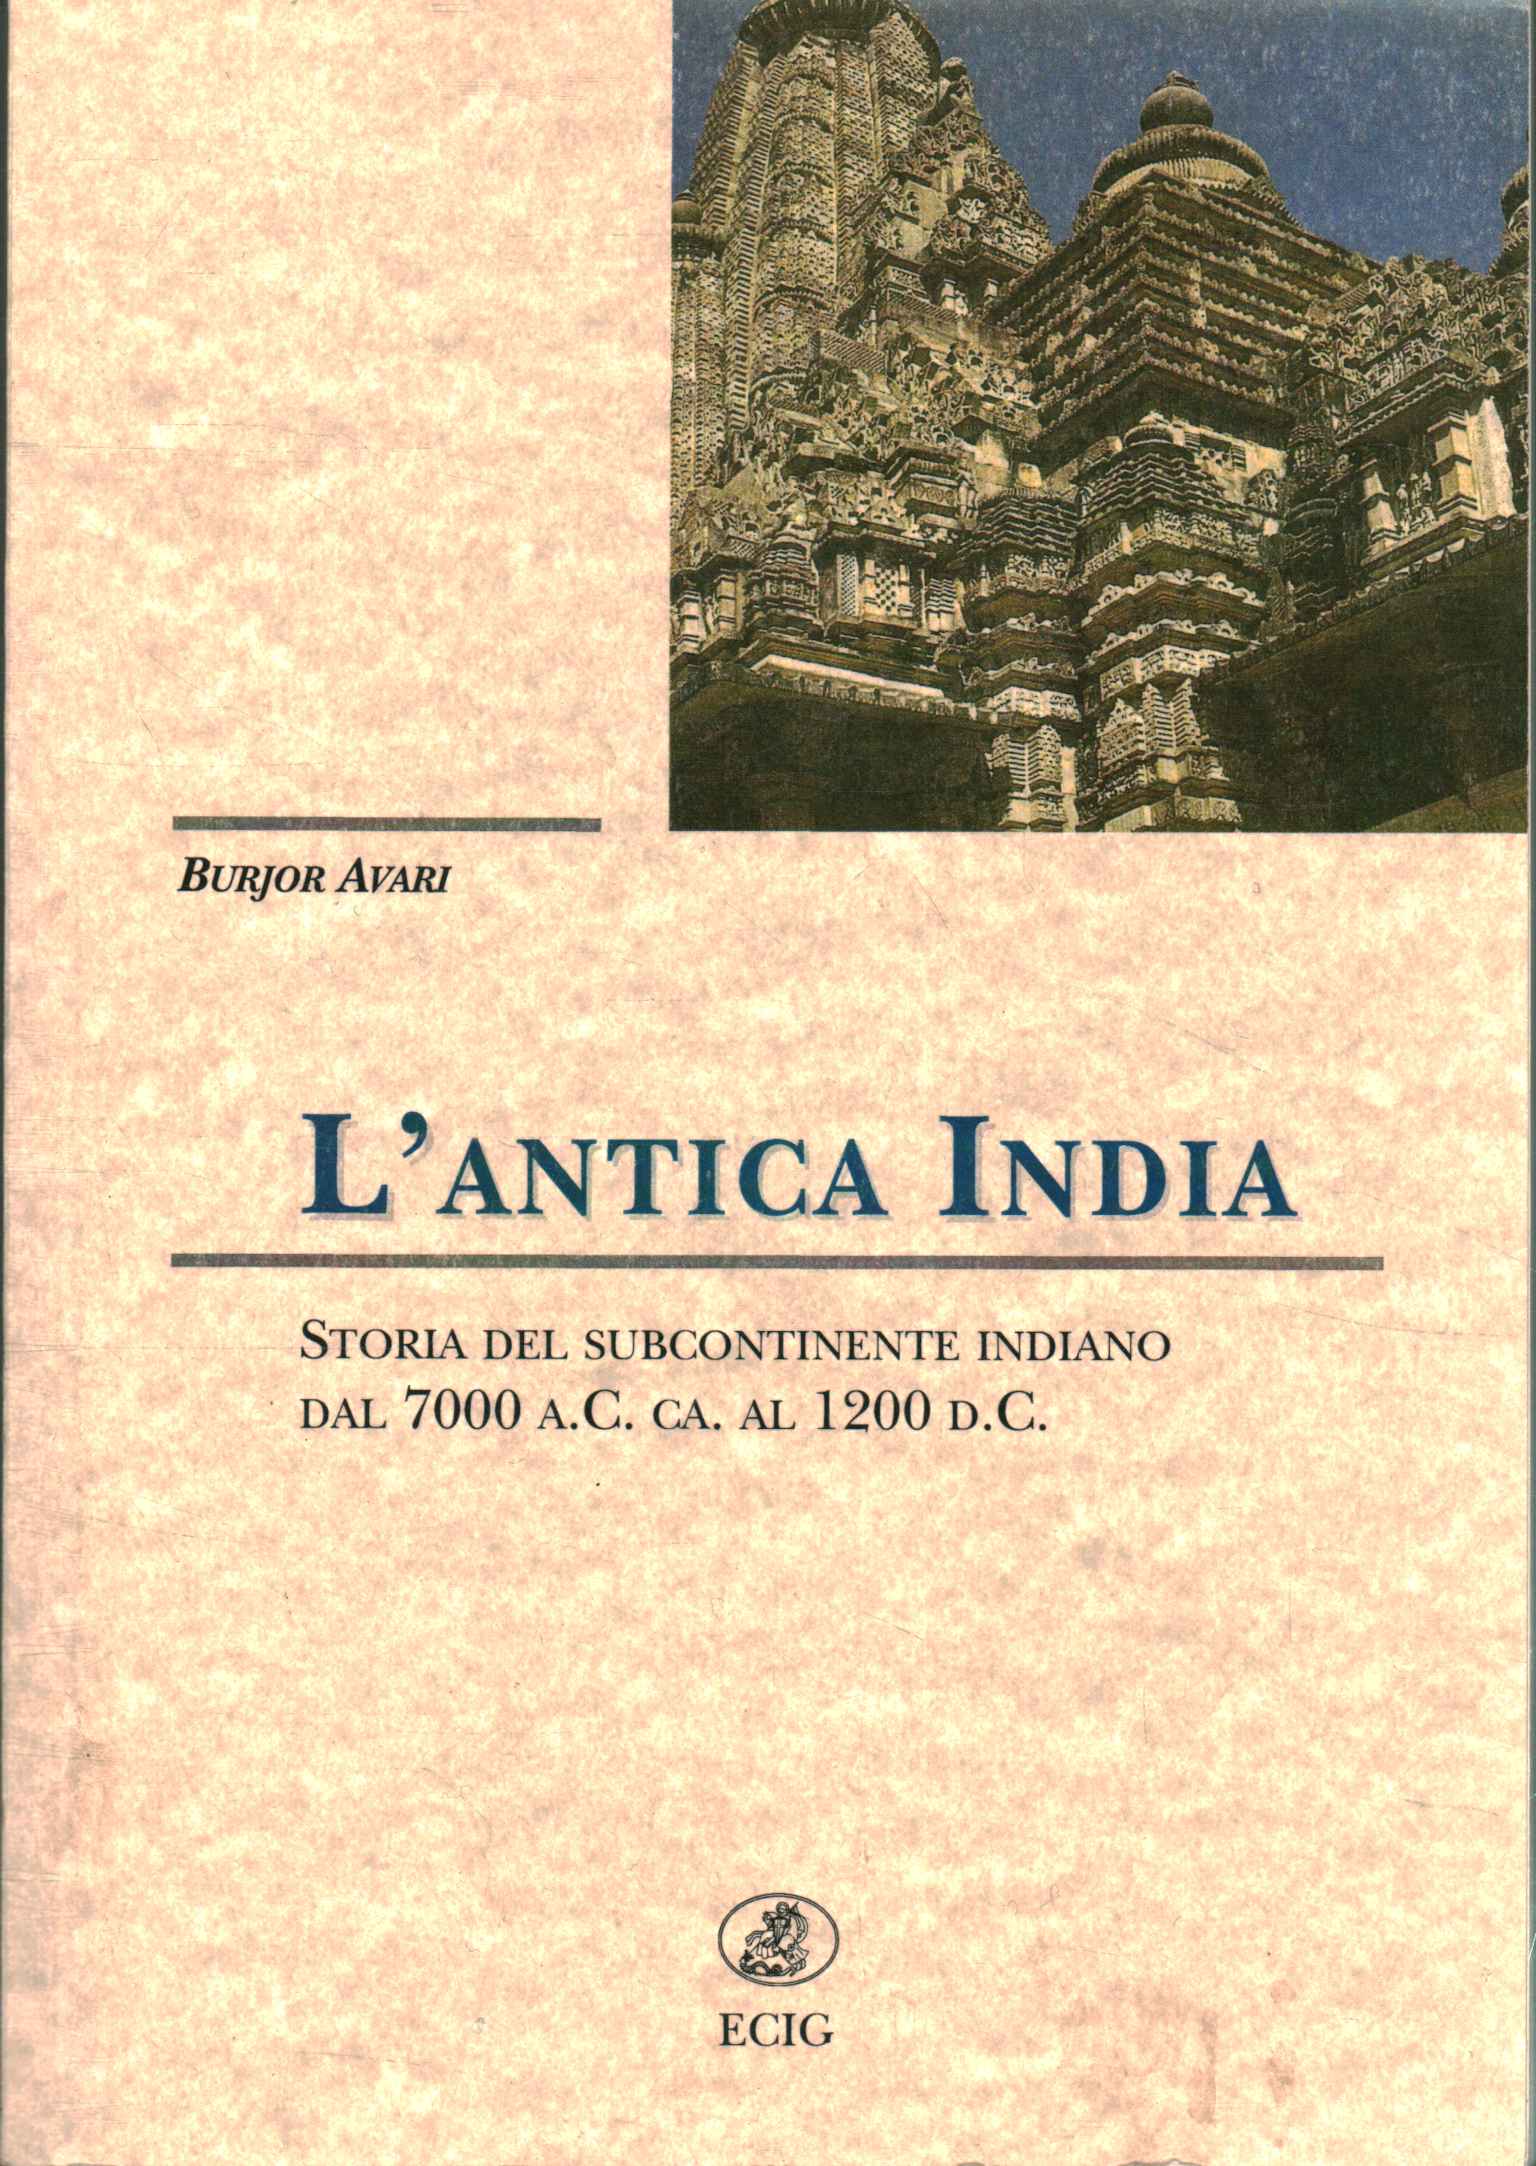 L'antica India